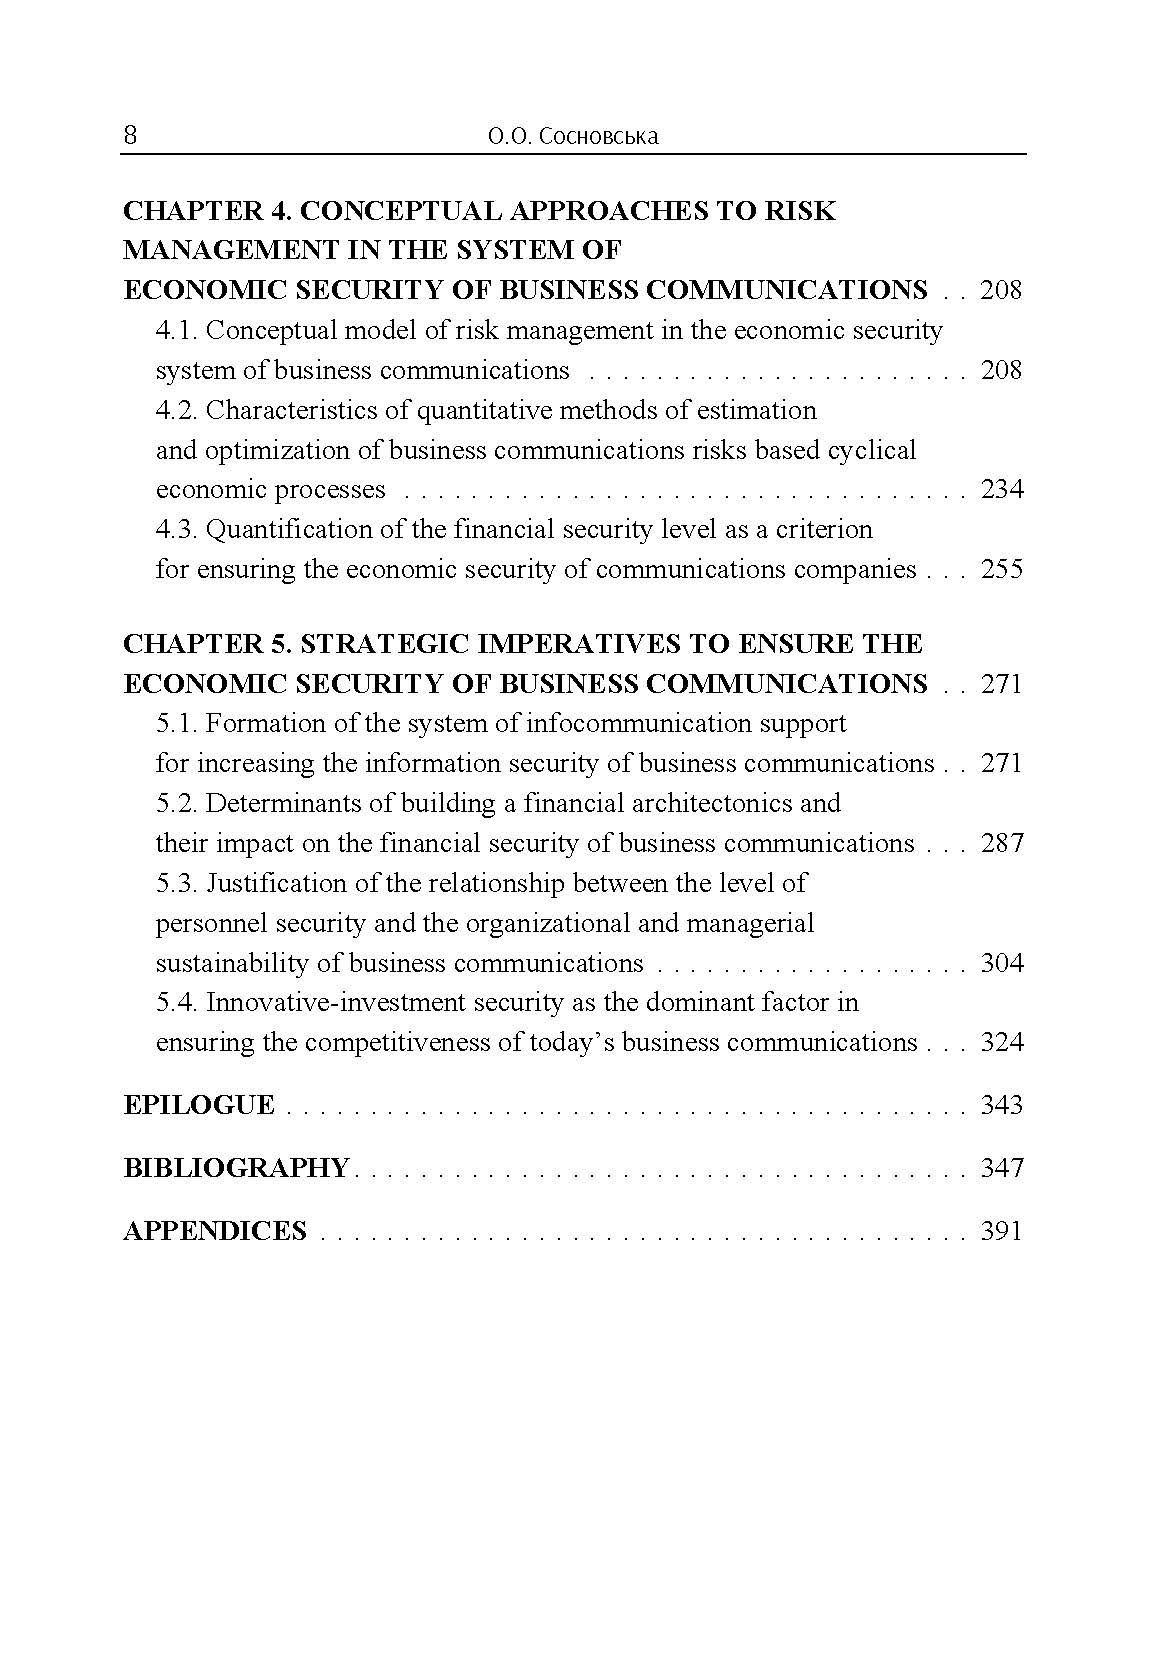 Система економічної безпеки підприємств зв'язку: монографія (2019 год)). Автор — Сосновська О.О.. 